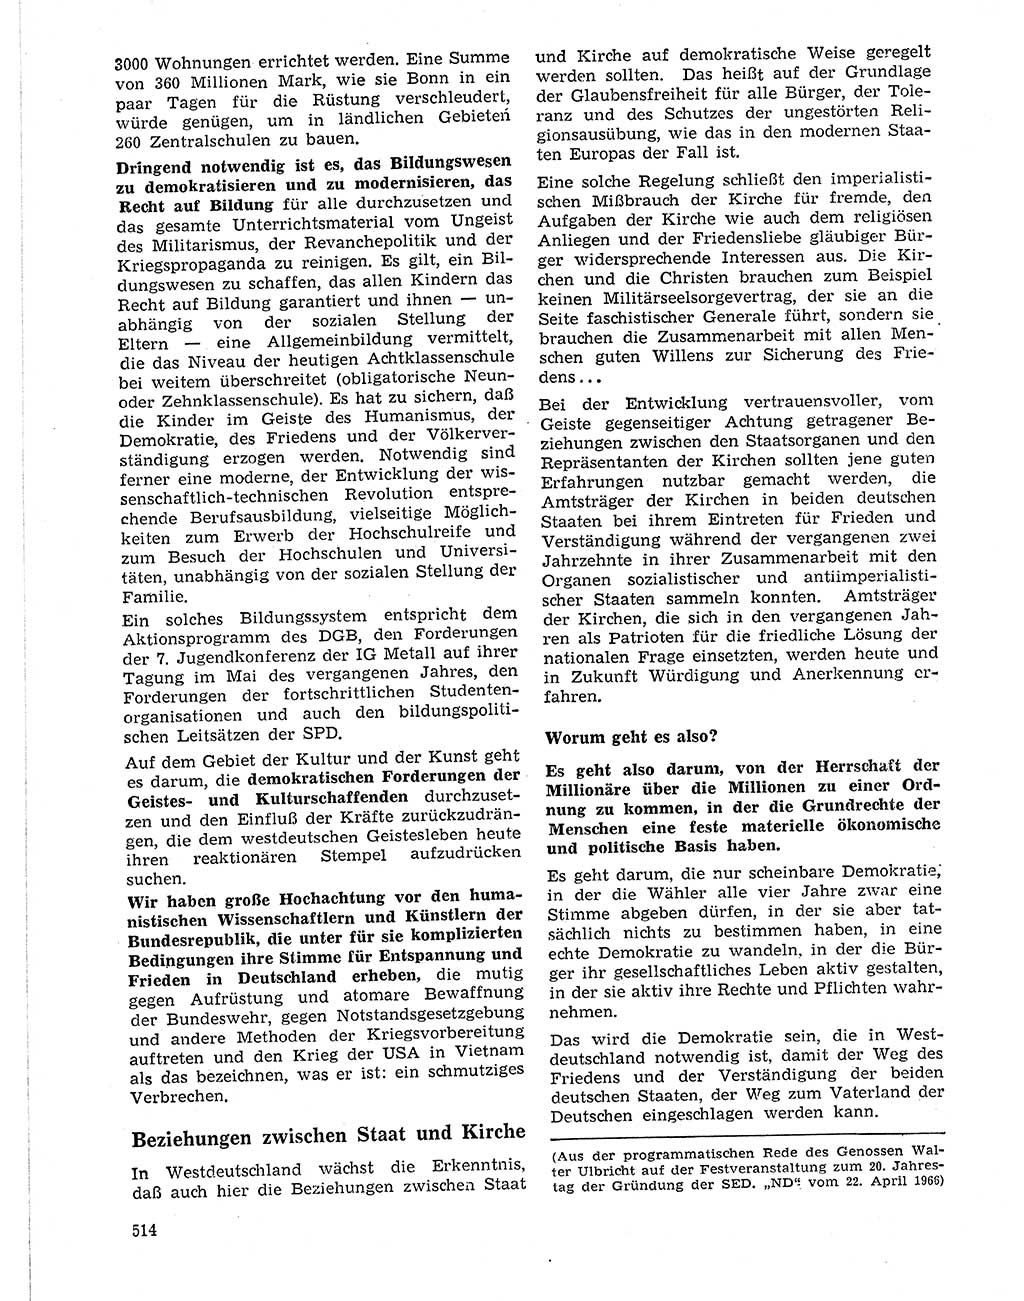 Neuer Weg (NW), Organ des Zentralkomitees (ZK) der SED (Sozialistische Einheitspartei Deutschlands) für Fragen des Parteilebens, 21. Jahrgang [Deutsche Demokratische Republik (DDR)] 1966, Seite 514 (NW ZK SED DDR 1966, S. 514)